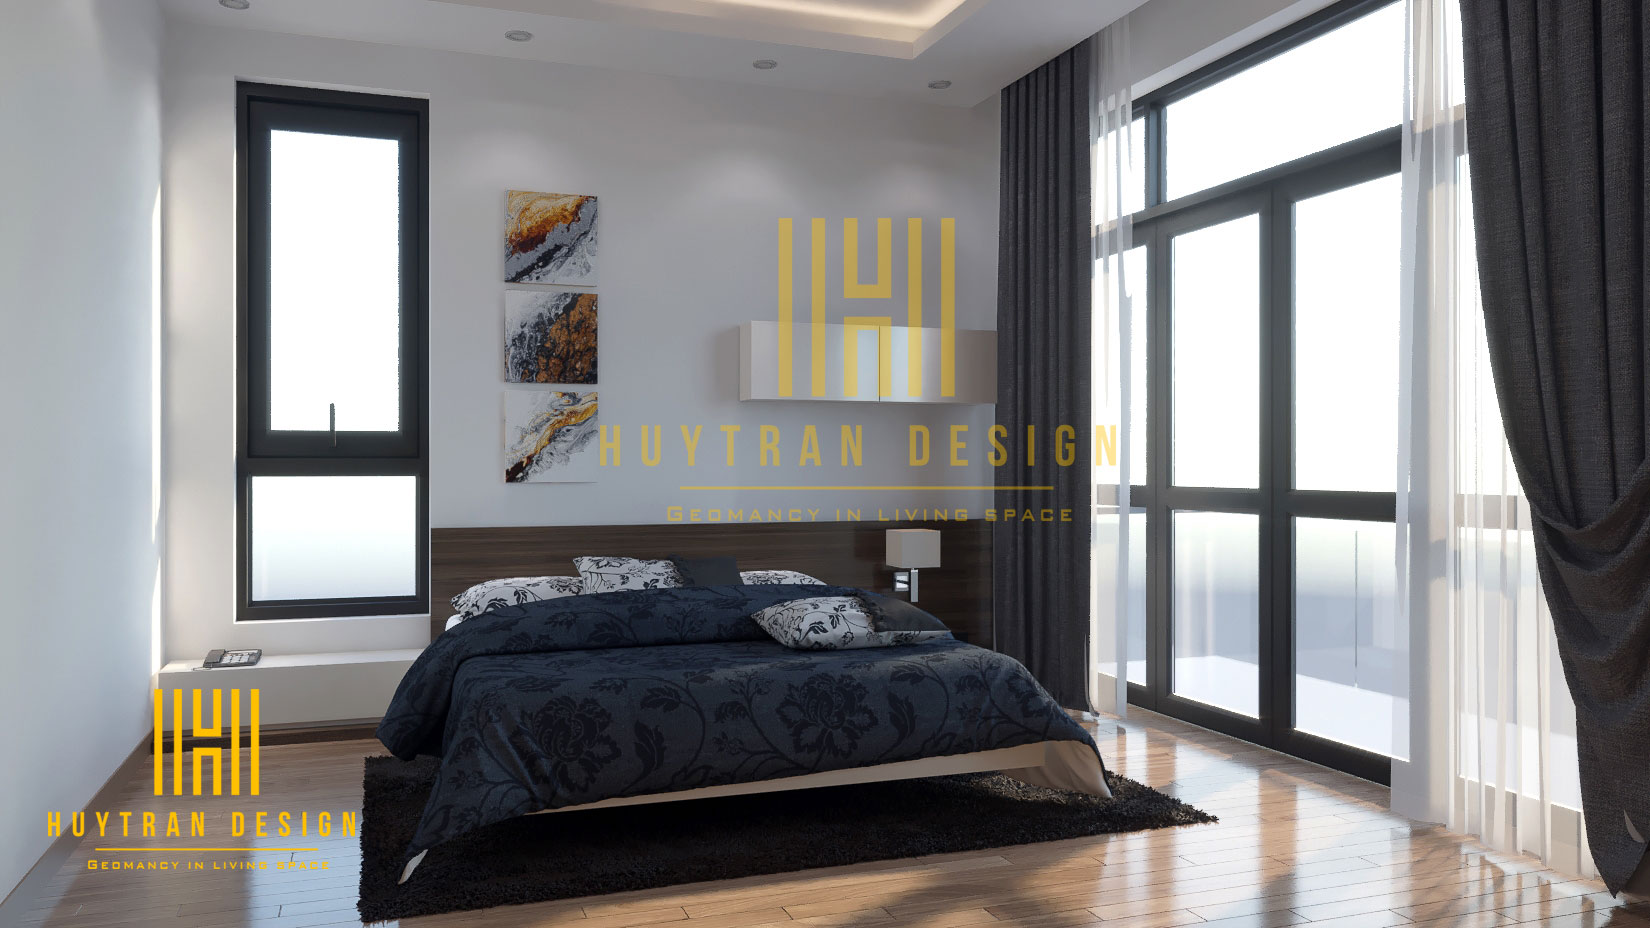 Thiết kế giường ngủ Kingsize hiện đại cho nội thất chung cư